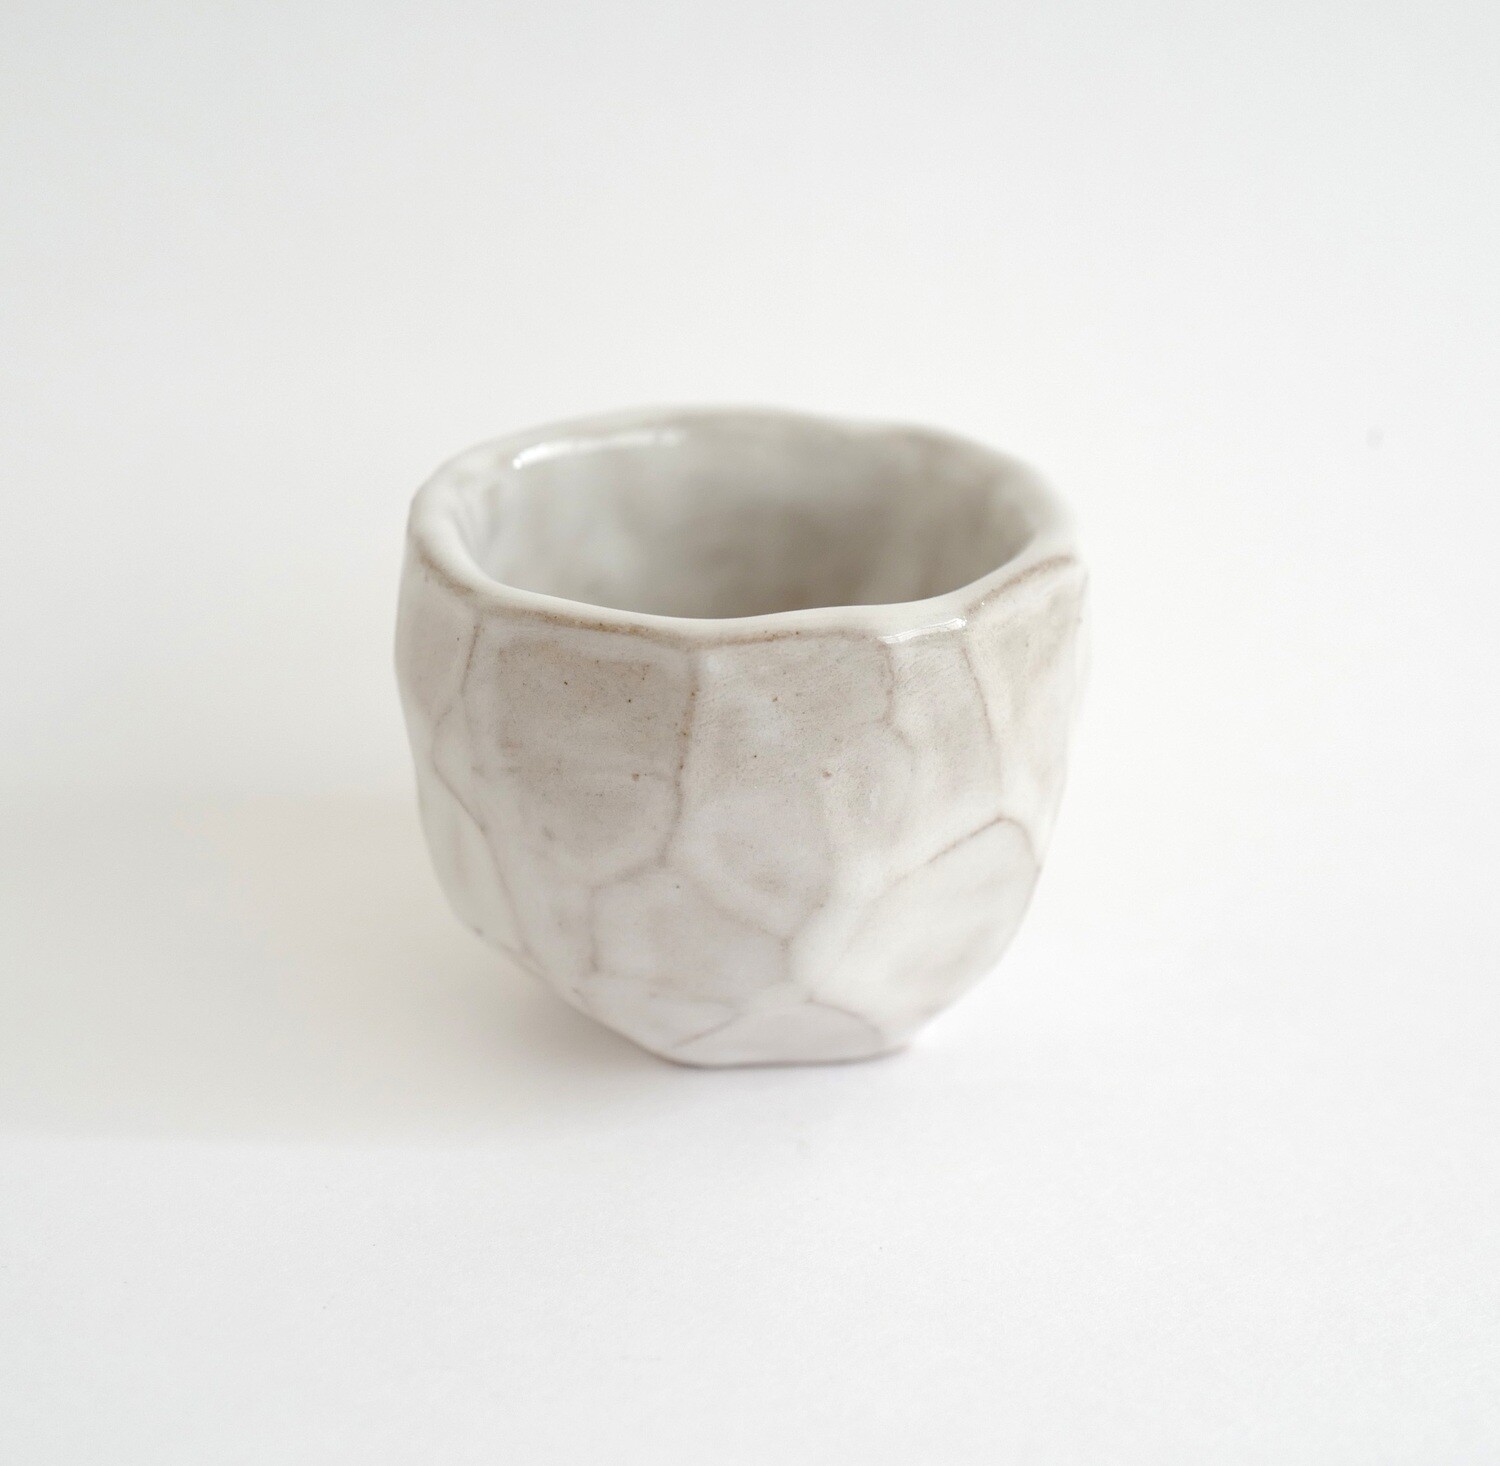 Sake cup - ceramics, handmade, sake lovers, gift